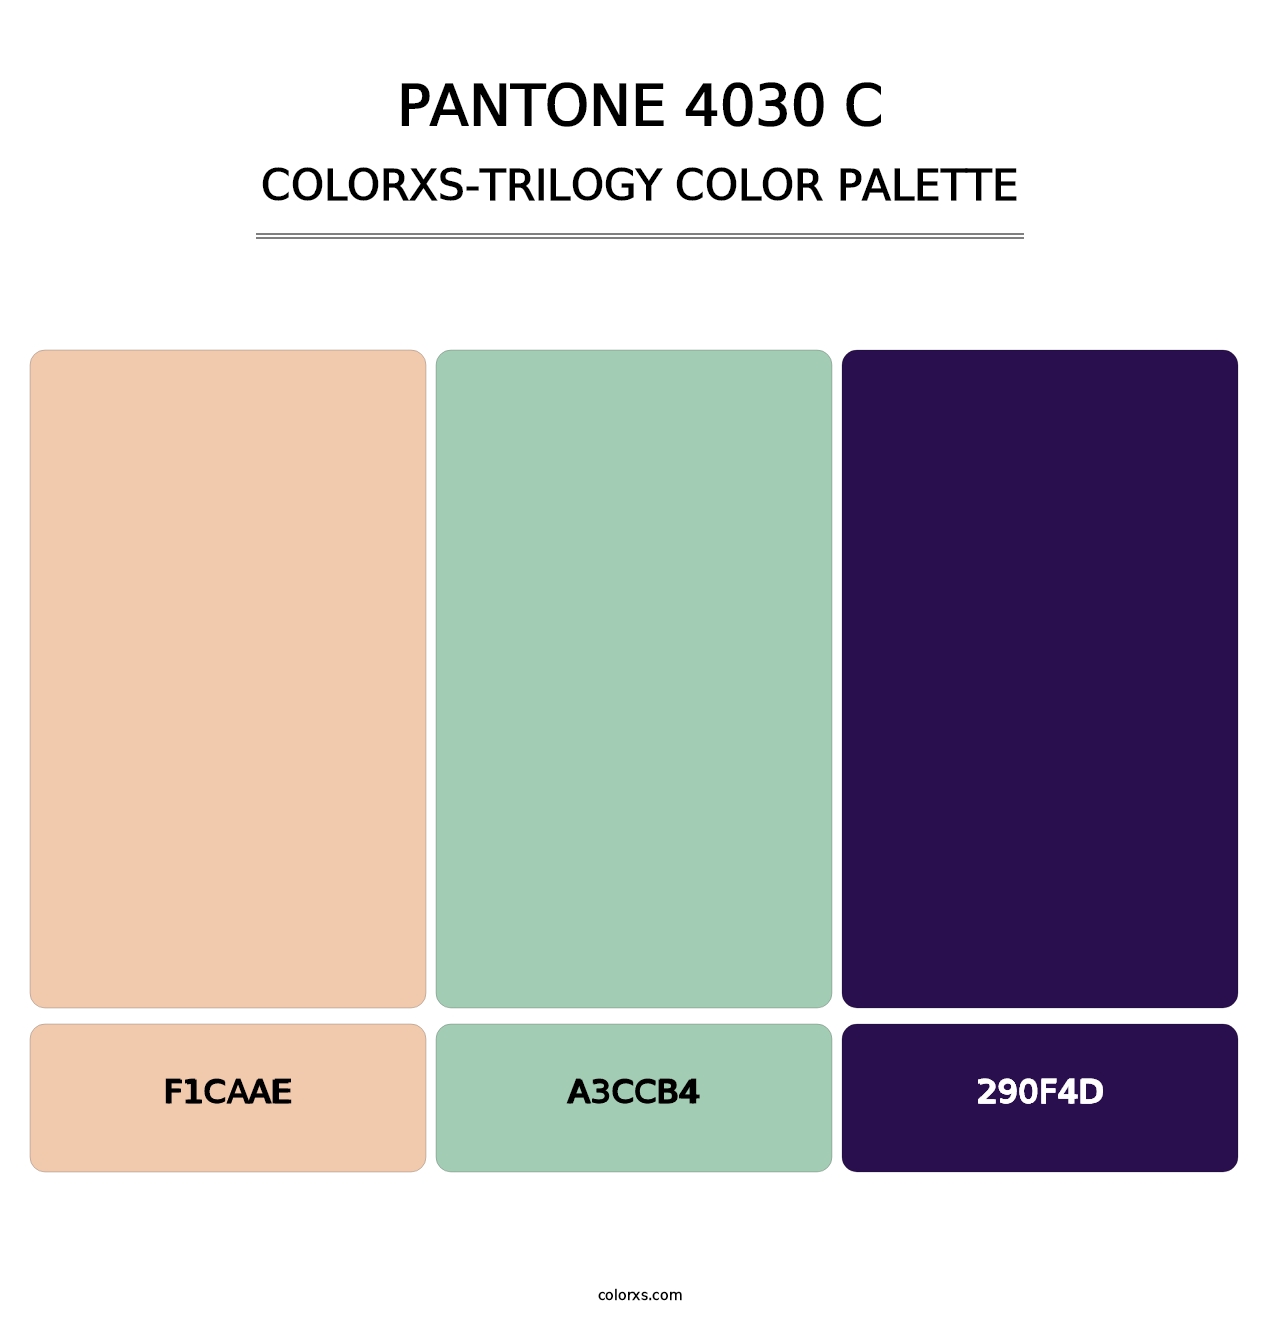 PANTONE 4030 C - Colorxs Trilogy Palette